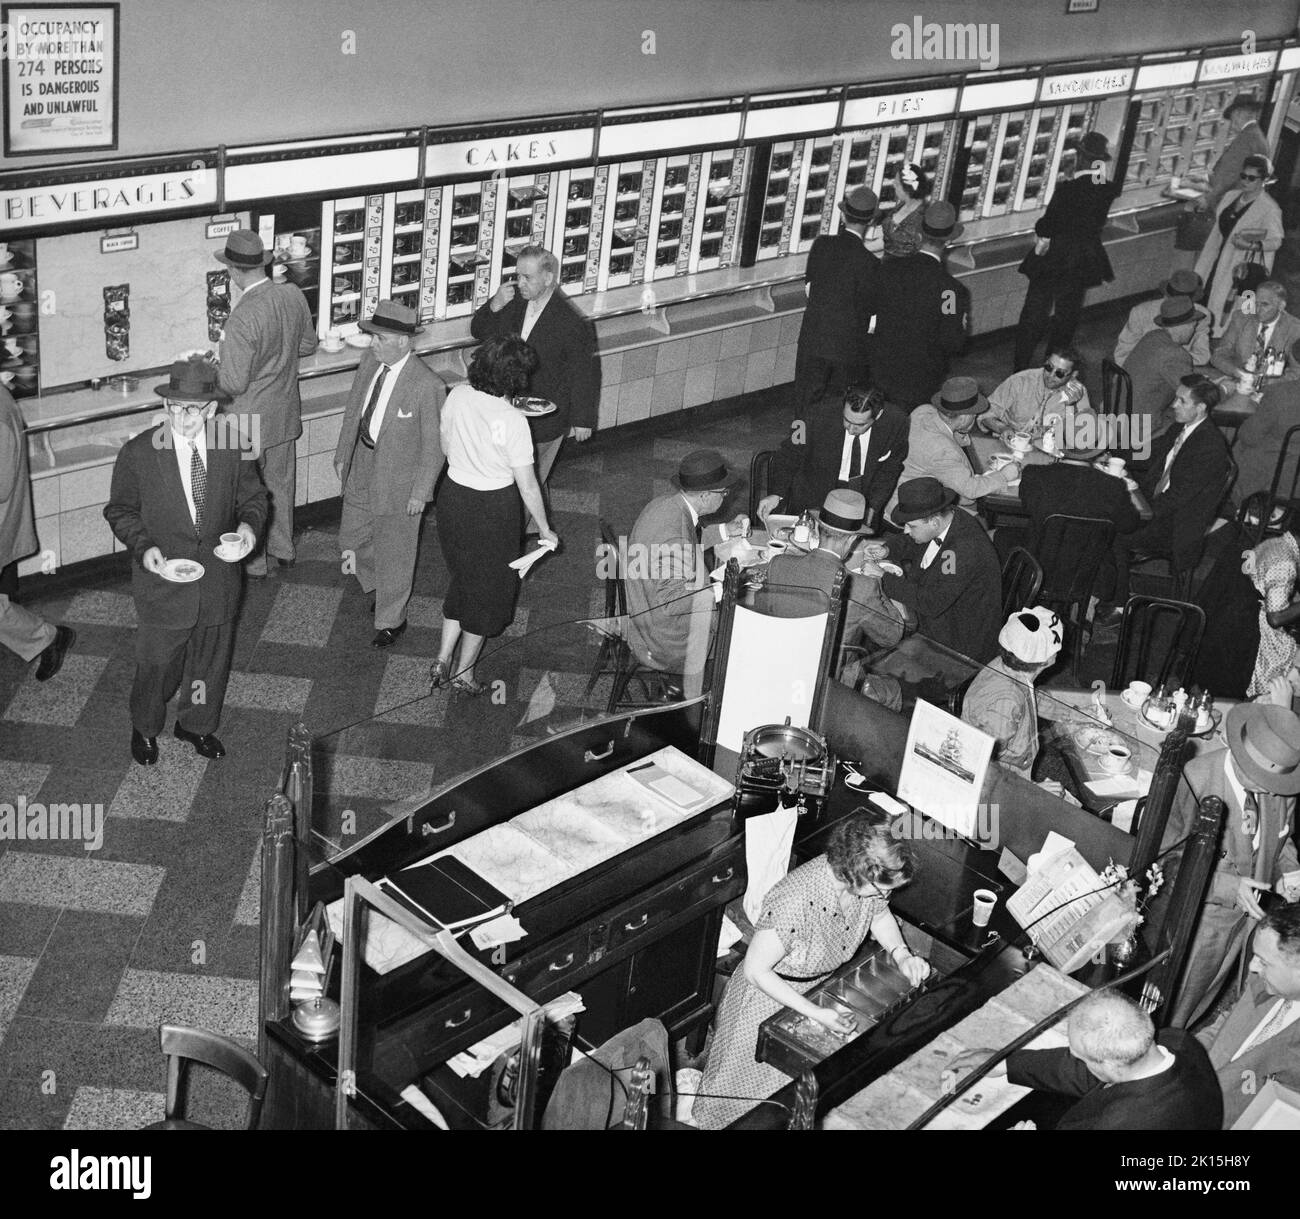 Horn & Hardart Automat Cafetería en la Avenida de las Américas en West 45th St., Nueva York, 1959. Horn & Hardart abrió el primer automat de servicio de comida en la ciudad de Nueva York en Times Square el 2 de julio de 1912. Tomaron el concepto de una versión alemana exitosa. Su lema era 'Menos trabajo para la madre'. A mediados del siglo 20th, había más de 50 restaurantes Horn & Hardart en Nueva York, sirviendo a 350.000 clientes al día. En el 1960s, las franquicias de comida rápida se hicieron populares, y los autómatas comenzaron a cerrarse. Foto de stock